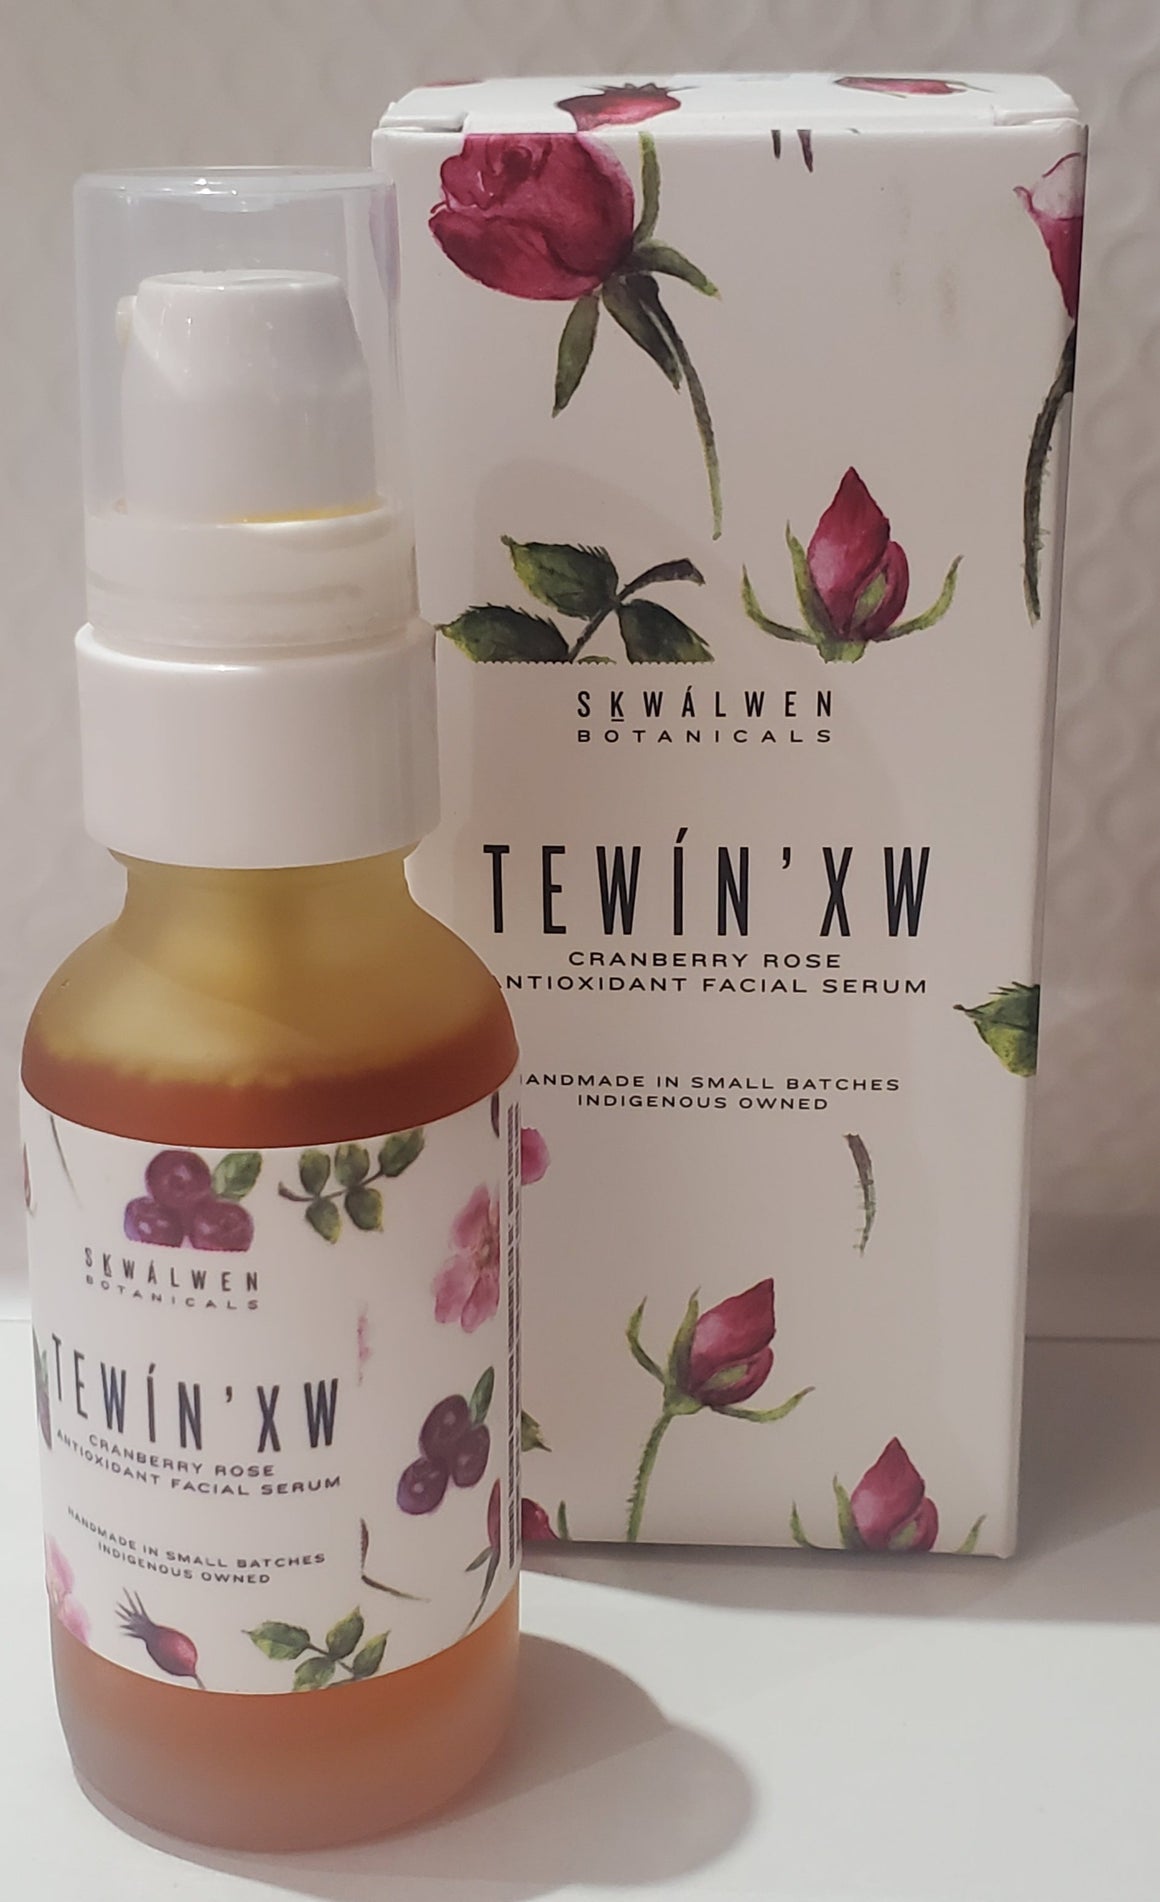 Tewin'xw Cranberry Rose Antioxidant Facial Serum